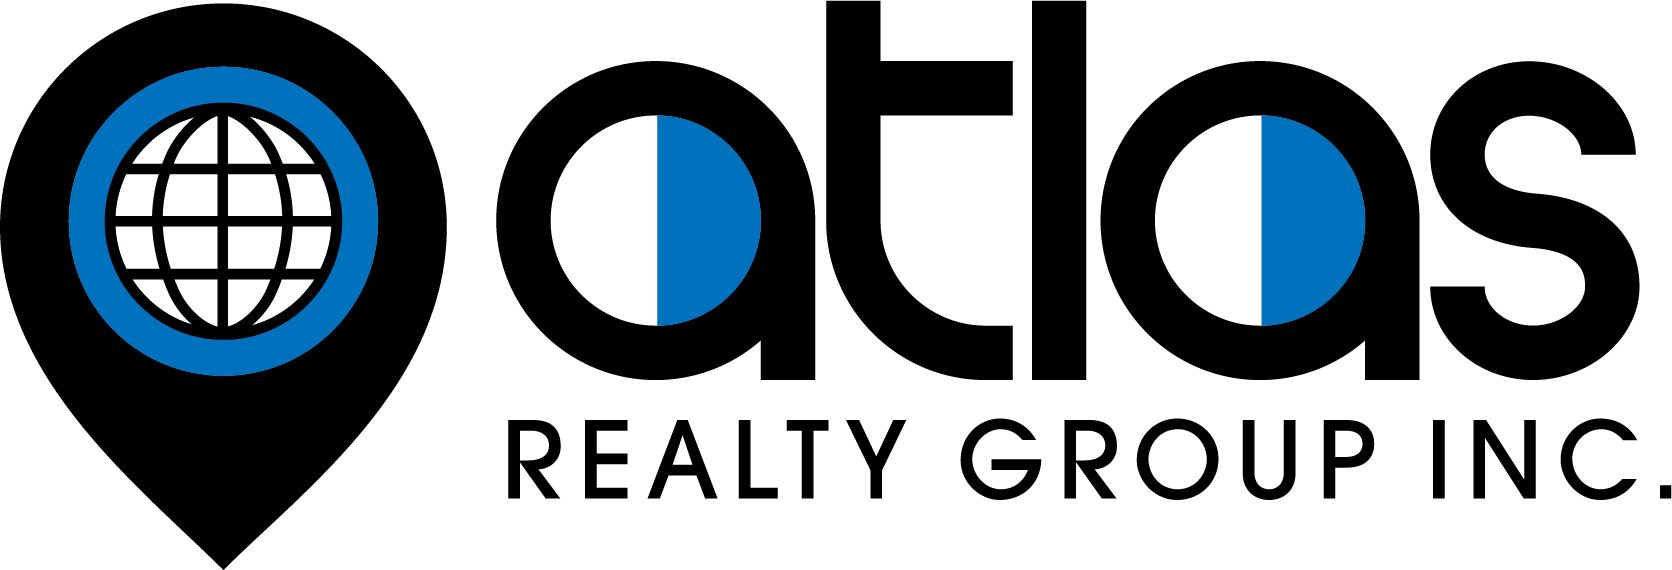 atlas_logo1